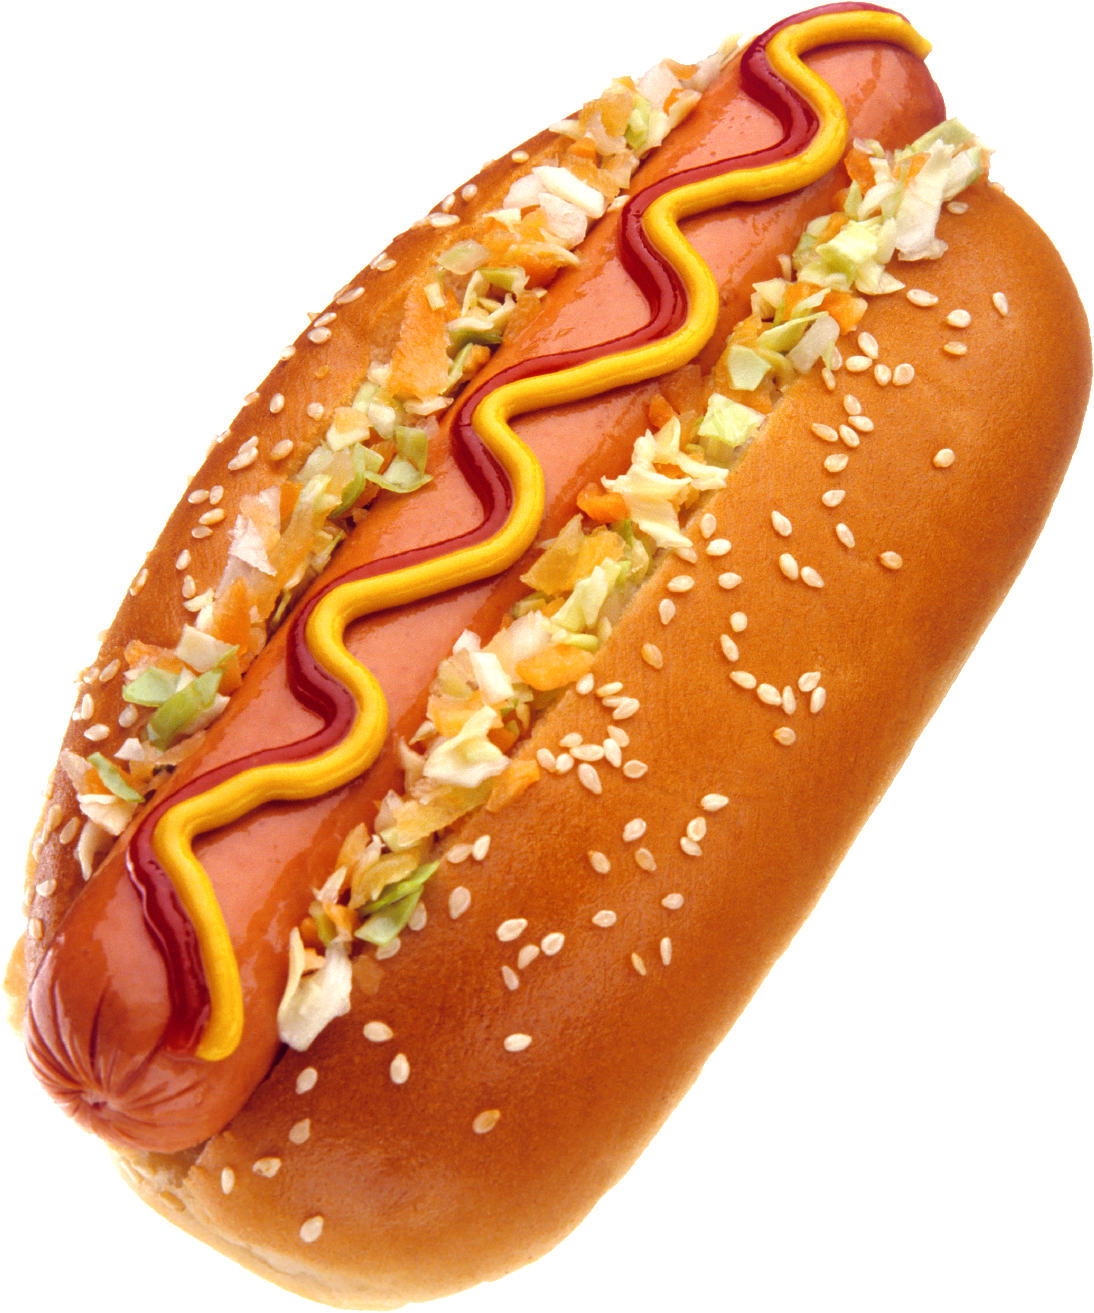 Hotdog HD PNG - 96069